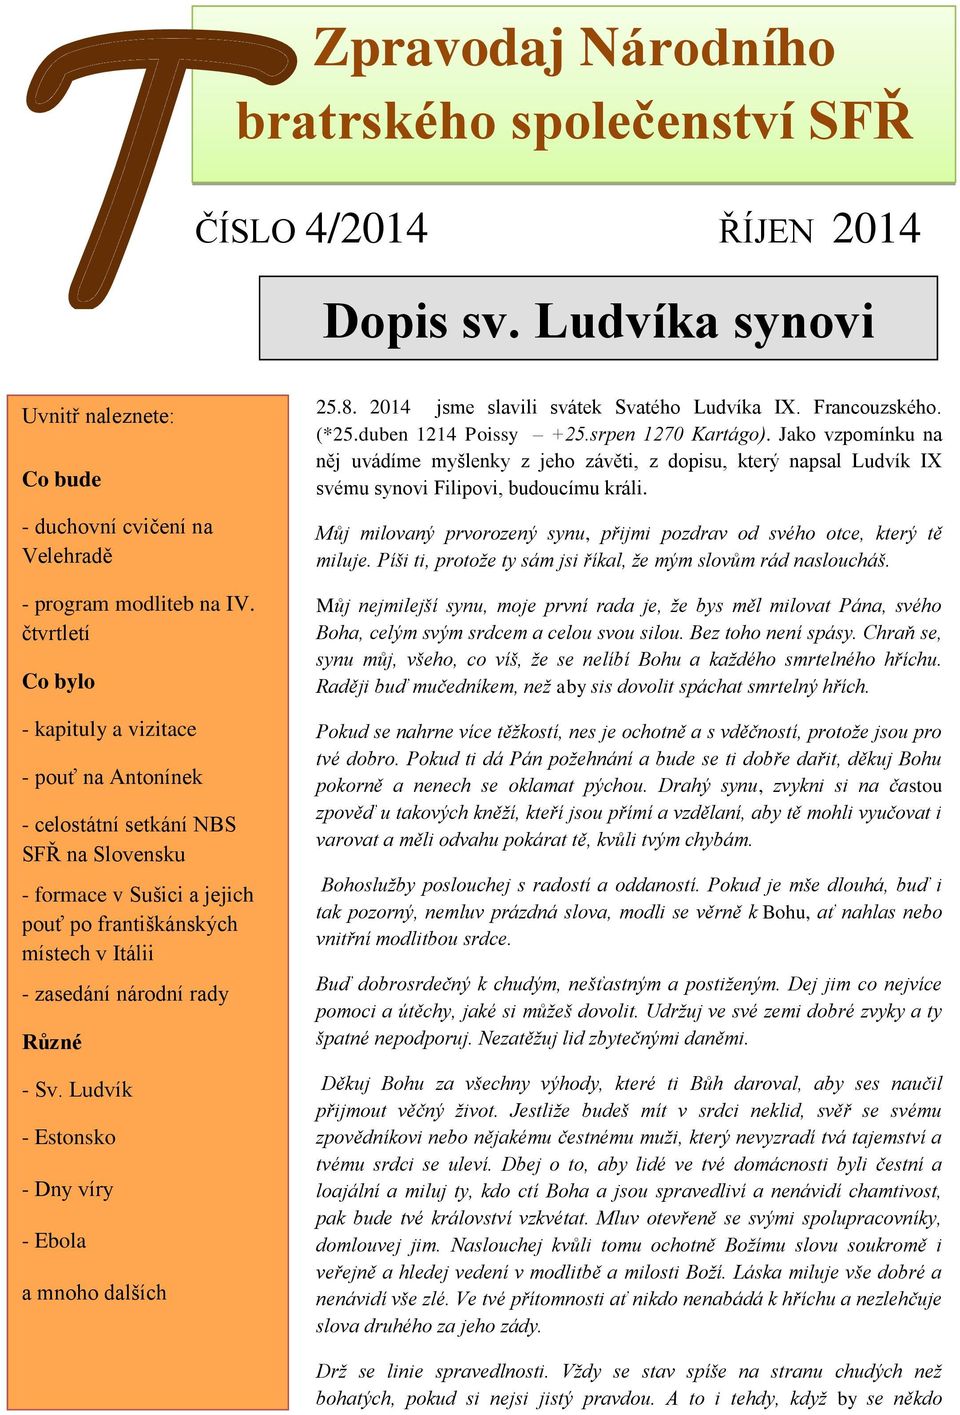 Různé - Sv. Ludvík - Estonsko - Dny víry - Ebola a mnoho dalších 25.8. 2014 jsme slavili svátek Svatého Ludvíka IX. Francouzského. (*25.duben 1214 Poissy +25.srpen 1270 Kartágo).